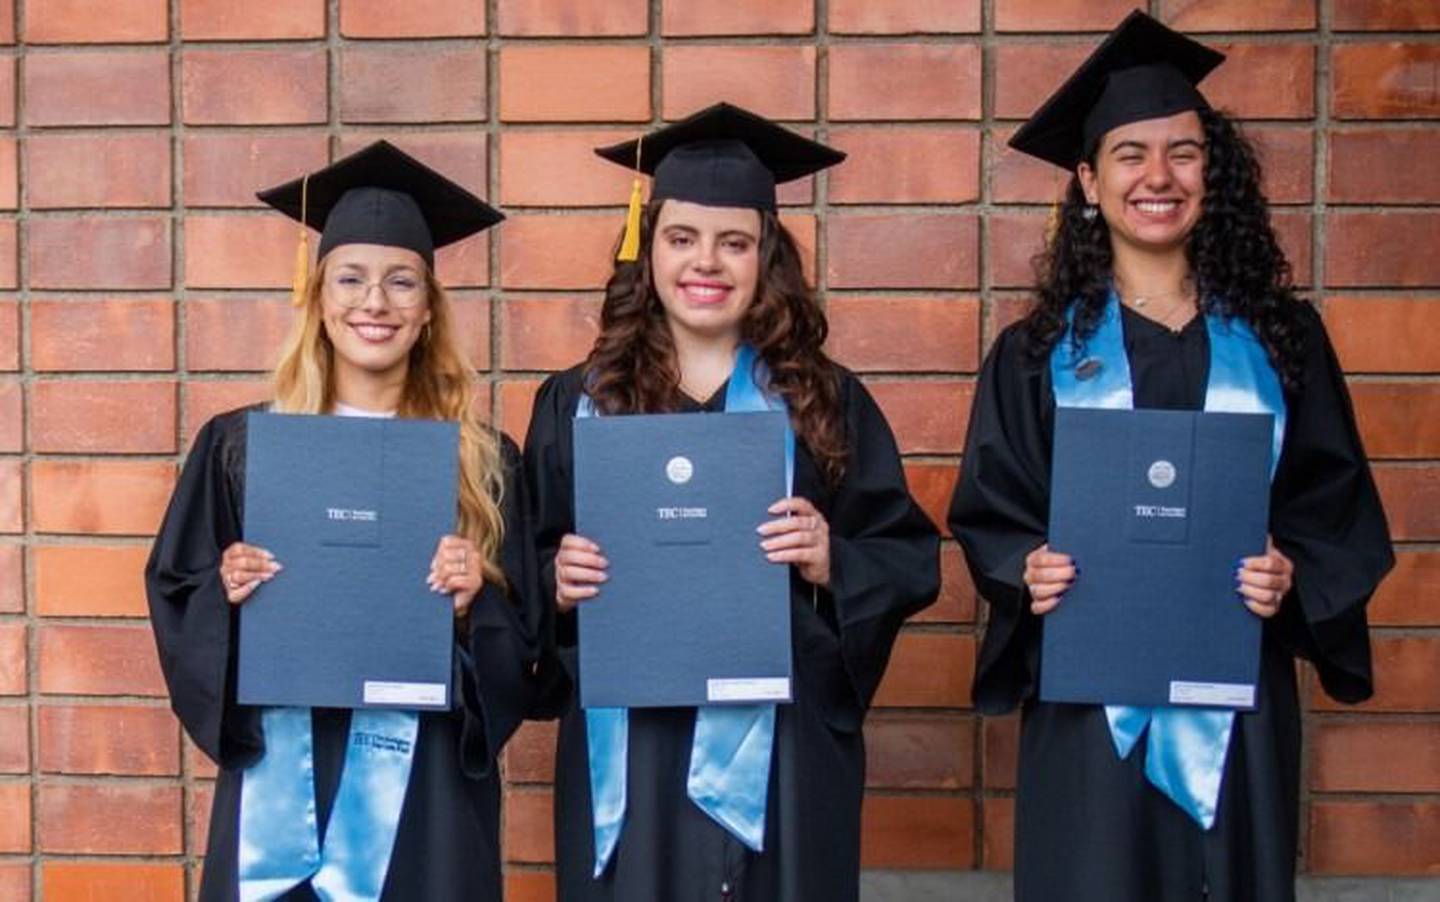 Valentina Campos Aguilar, Natalia Calderón Barboza, y María Elena Esquivel Murillo se convirtieron en las primeras mujeres en obtener este grado académica